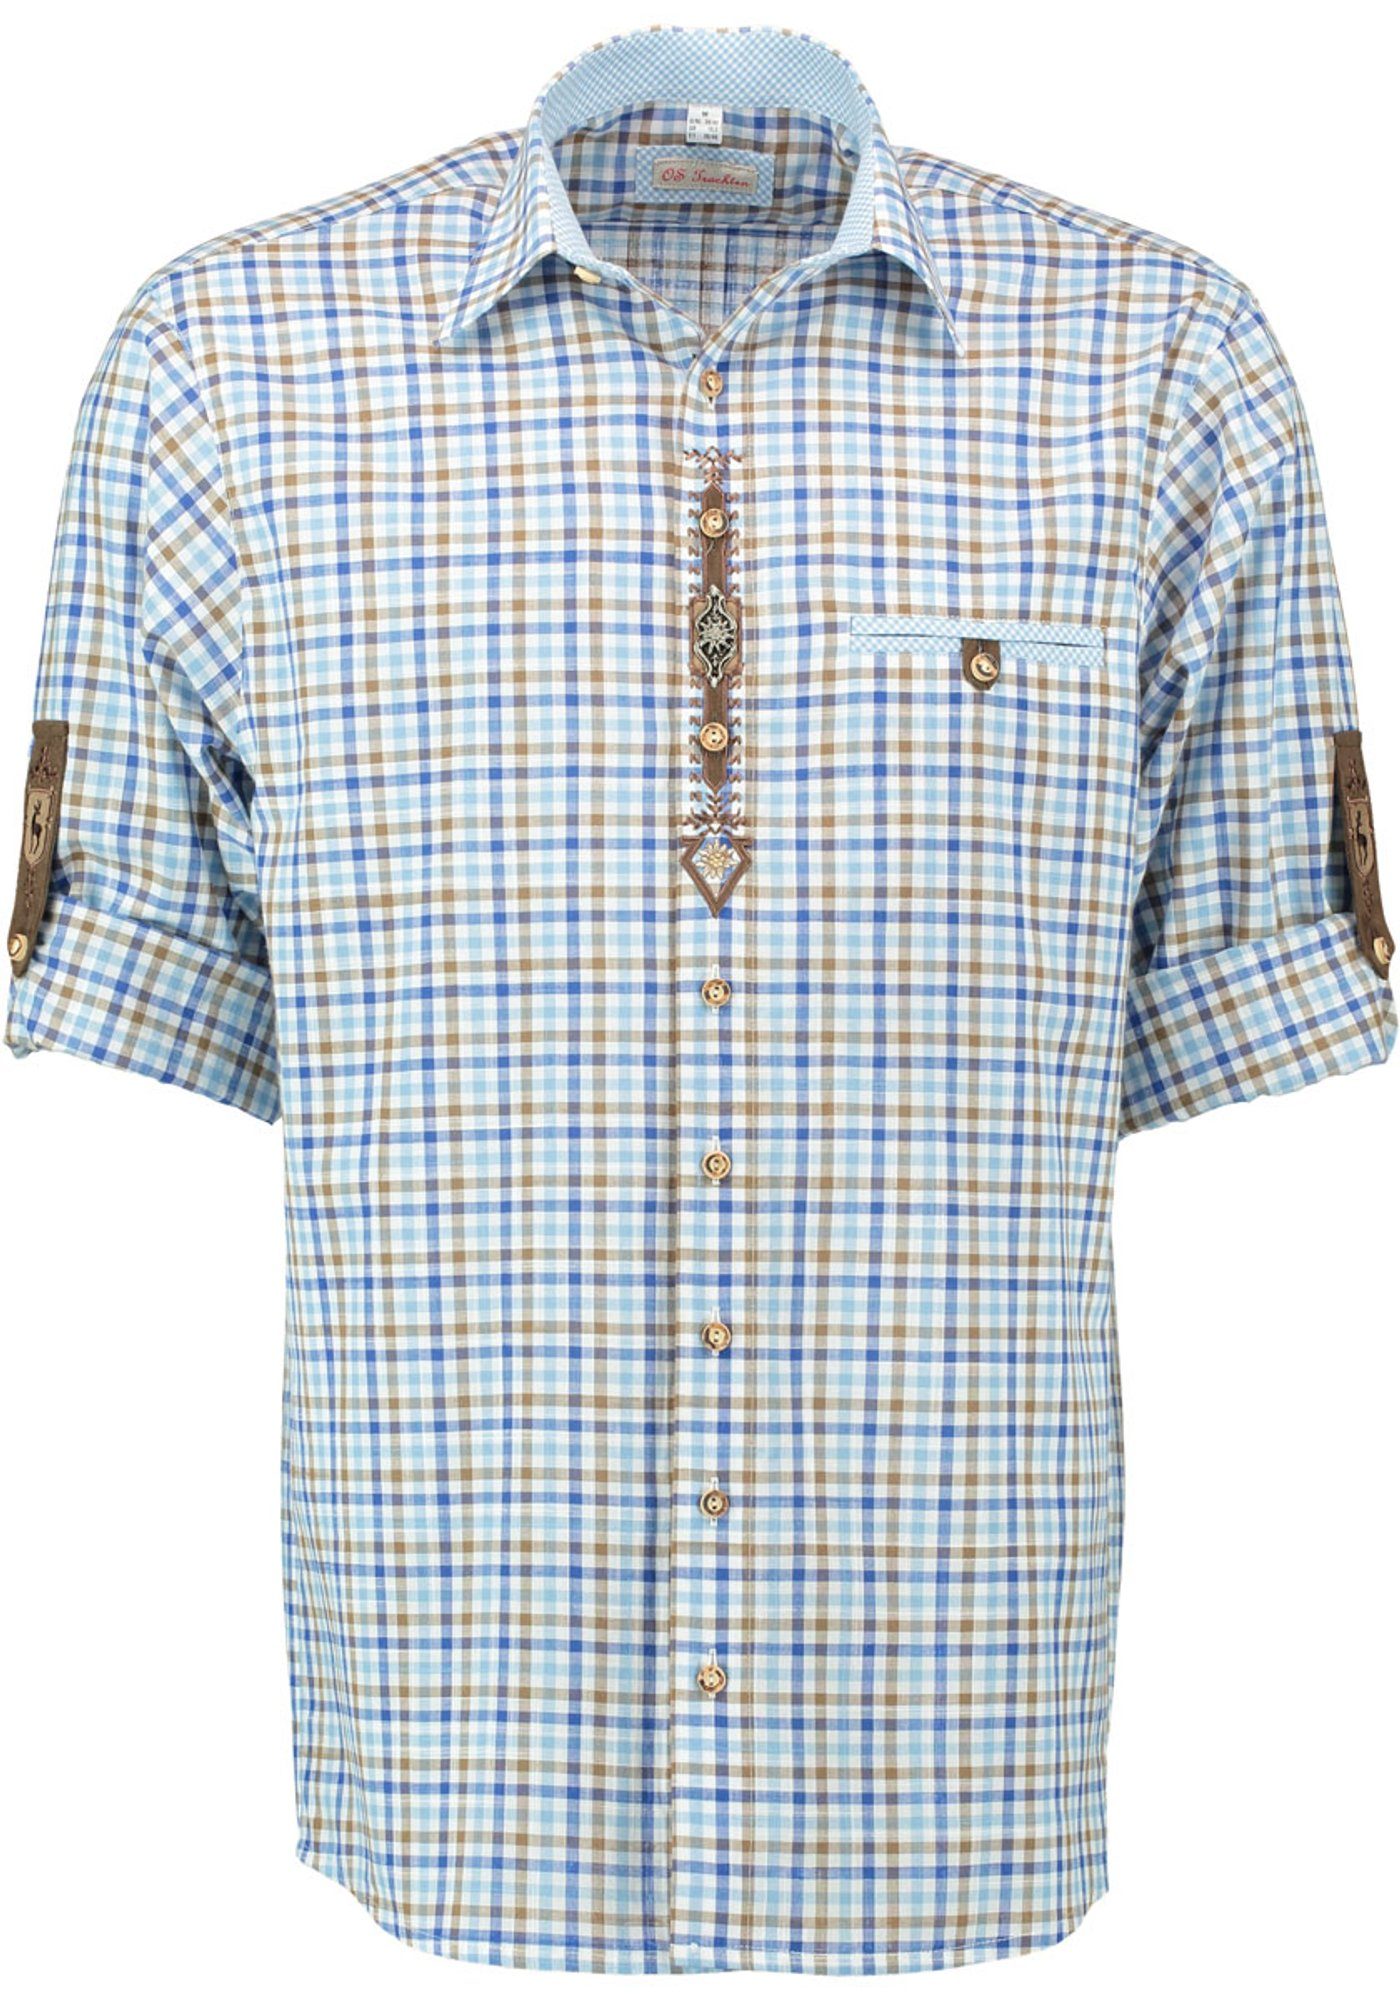 Knopf Herren Trachtenhemd Langarmhemd mit mit Ployos Paspeltasche hellbraun OS-Trachten